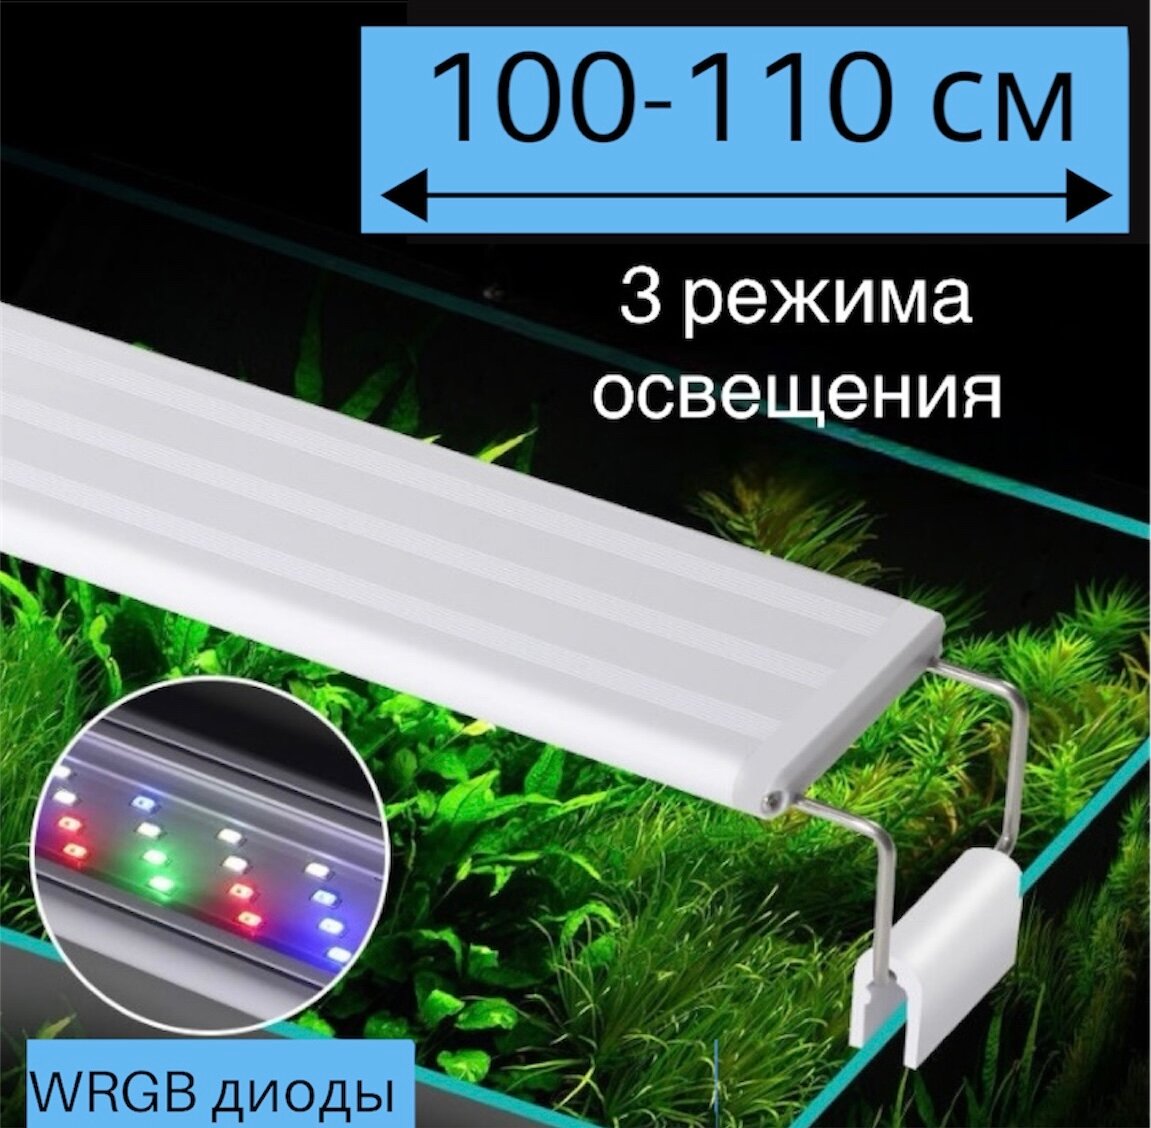 YR - 100 LED (от 100 см до 110 см) / 3 режима освещения / светильник для аквариума